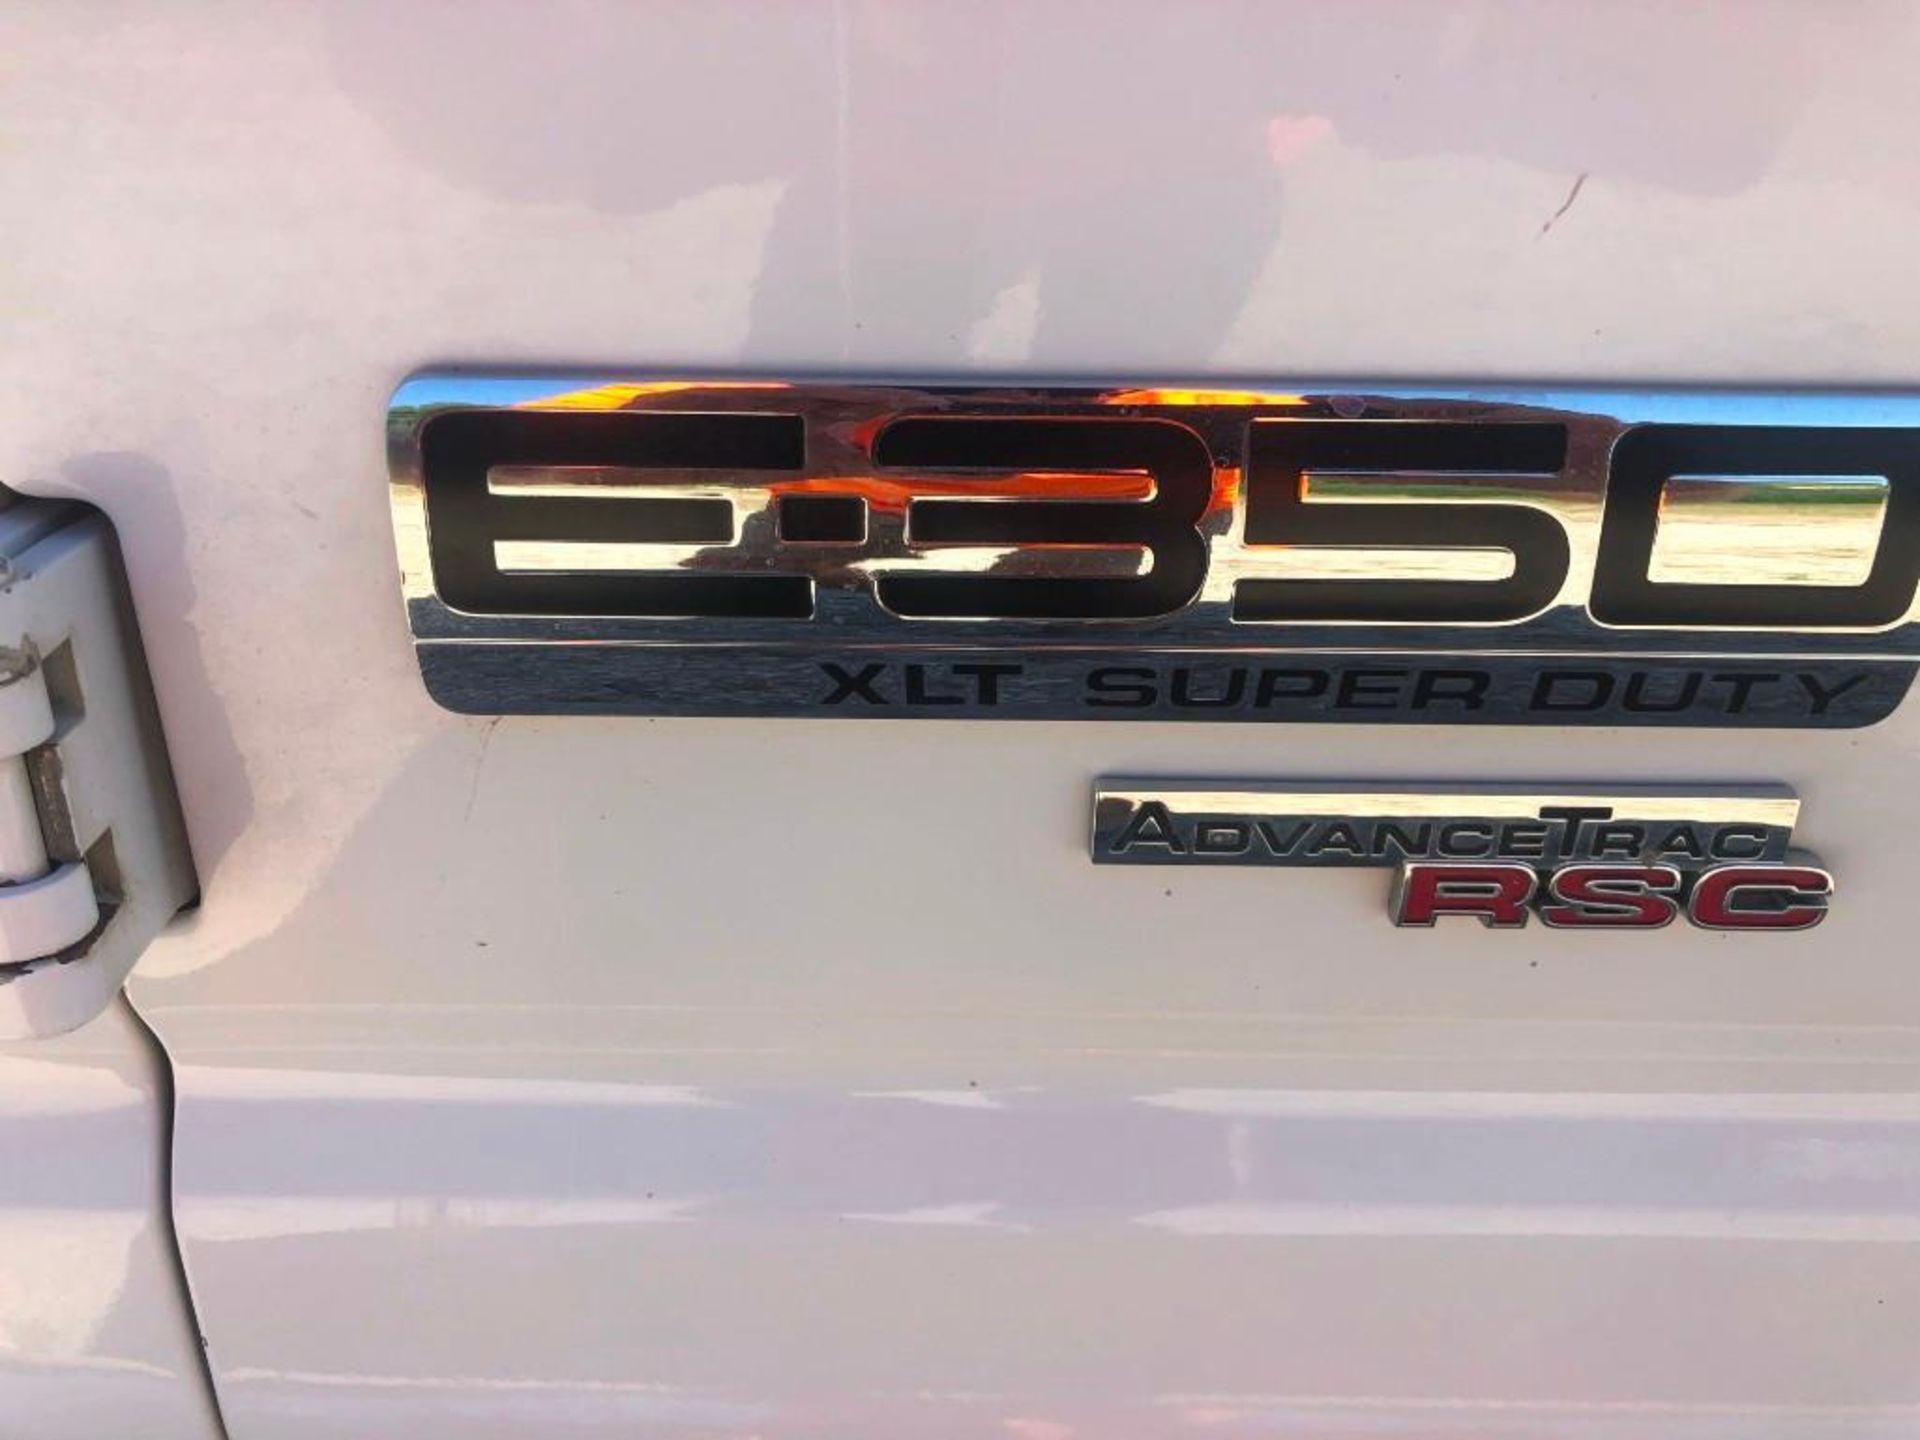 2013 Ford E3500 XLT Super Duty Van, VIN #1FBSS3BL0DDA50220, 229344 Miles, Model E3500XLT Super - Image 5 of 18